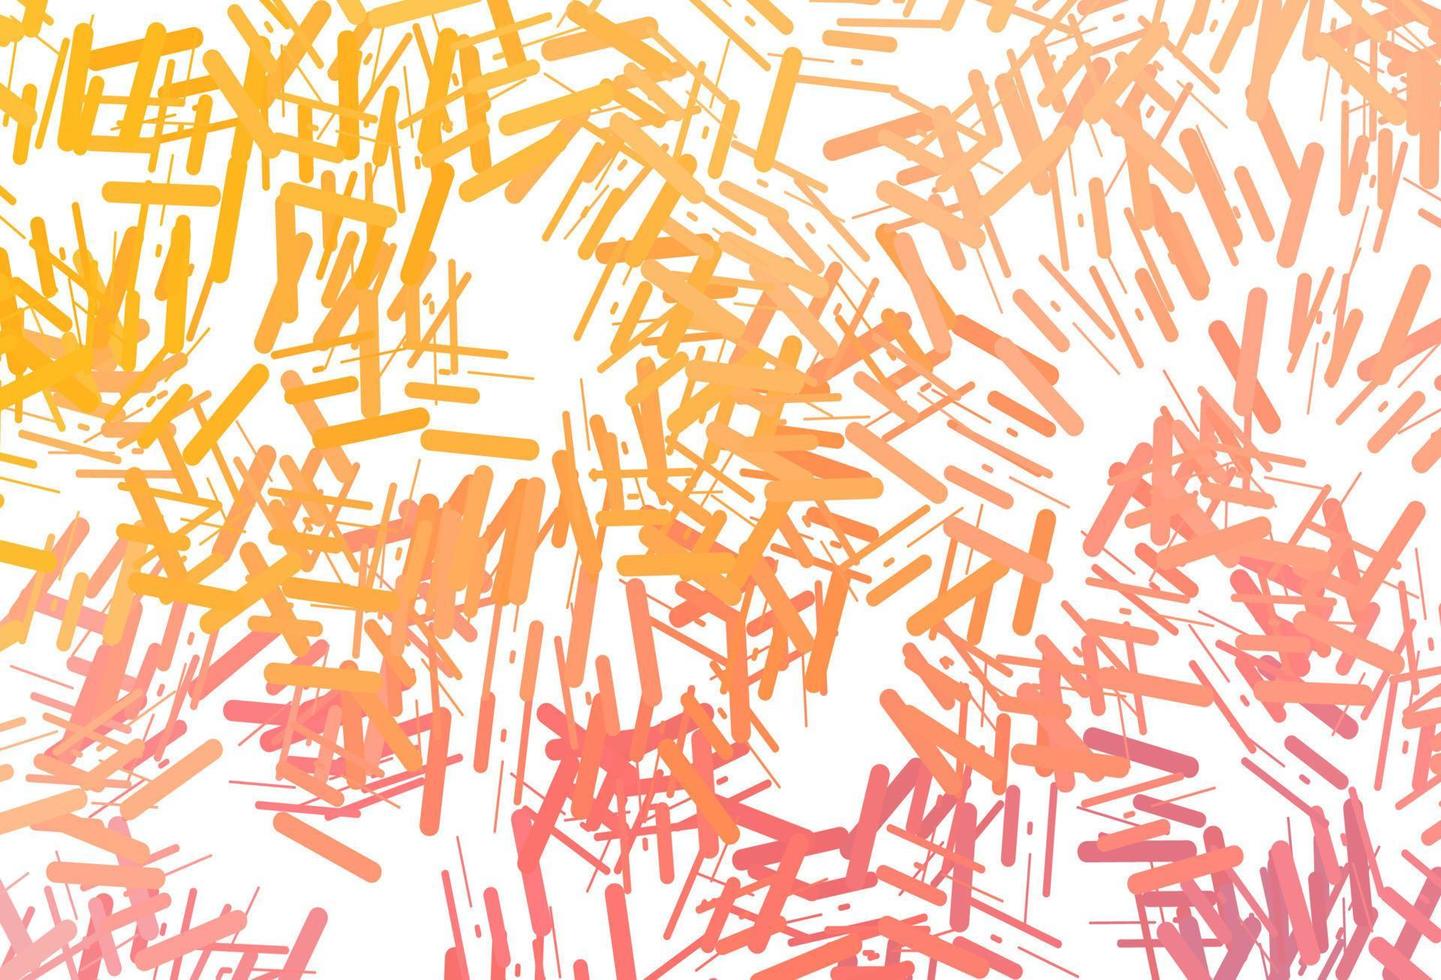 toile de fond de vecteur jaune foncé, orange avec de longues lignes.